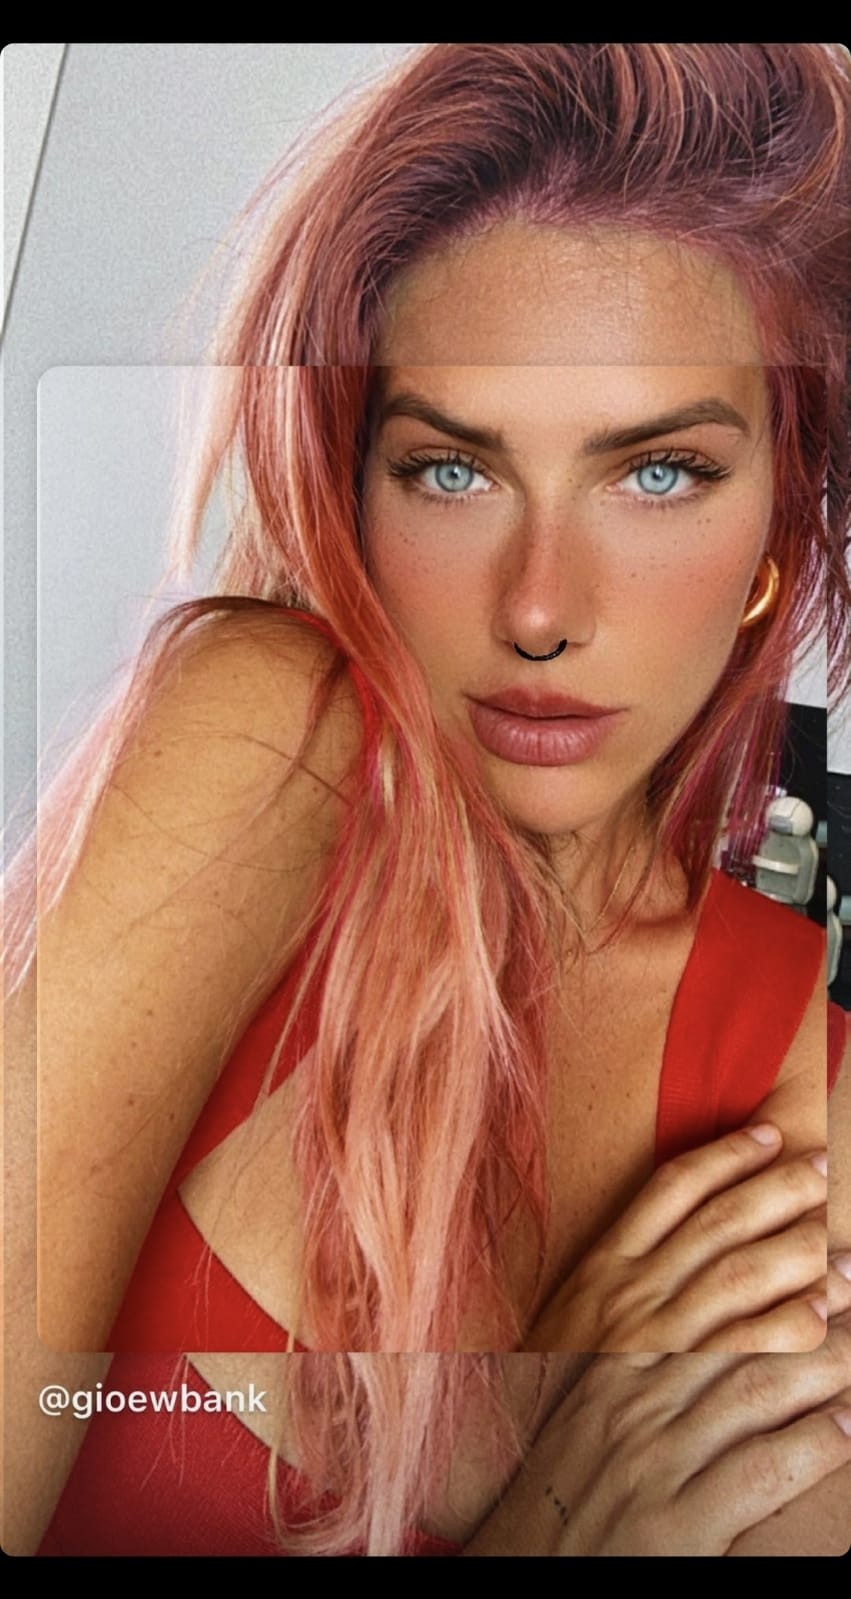 Gio Ewbank de cabelos cor-de-rosa (Foto: Reprodução/Instagram)